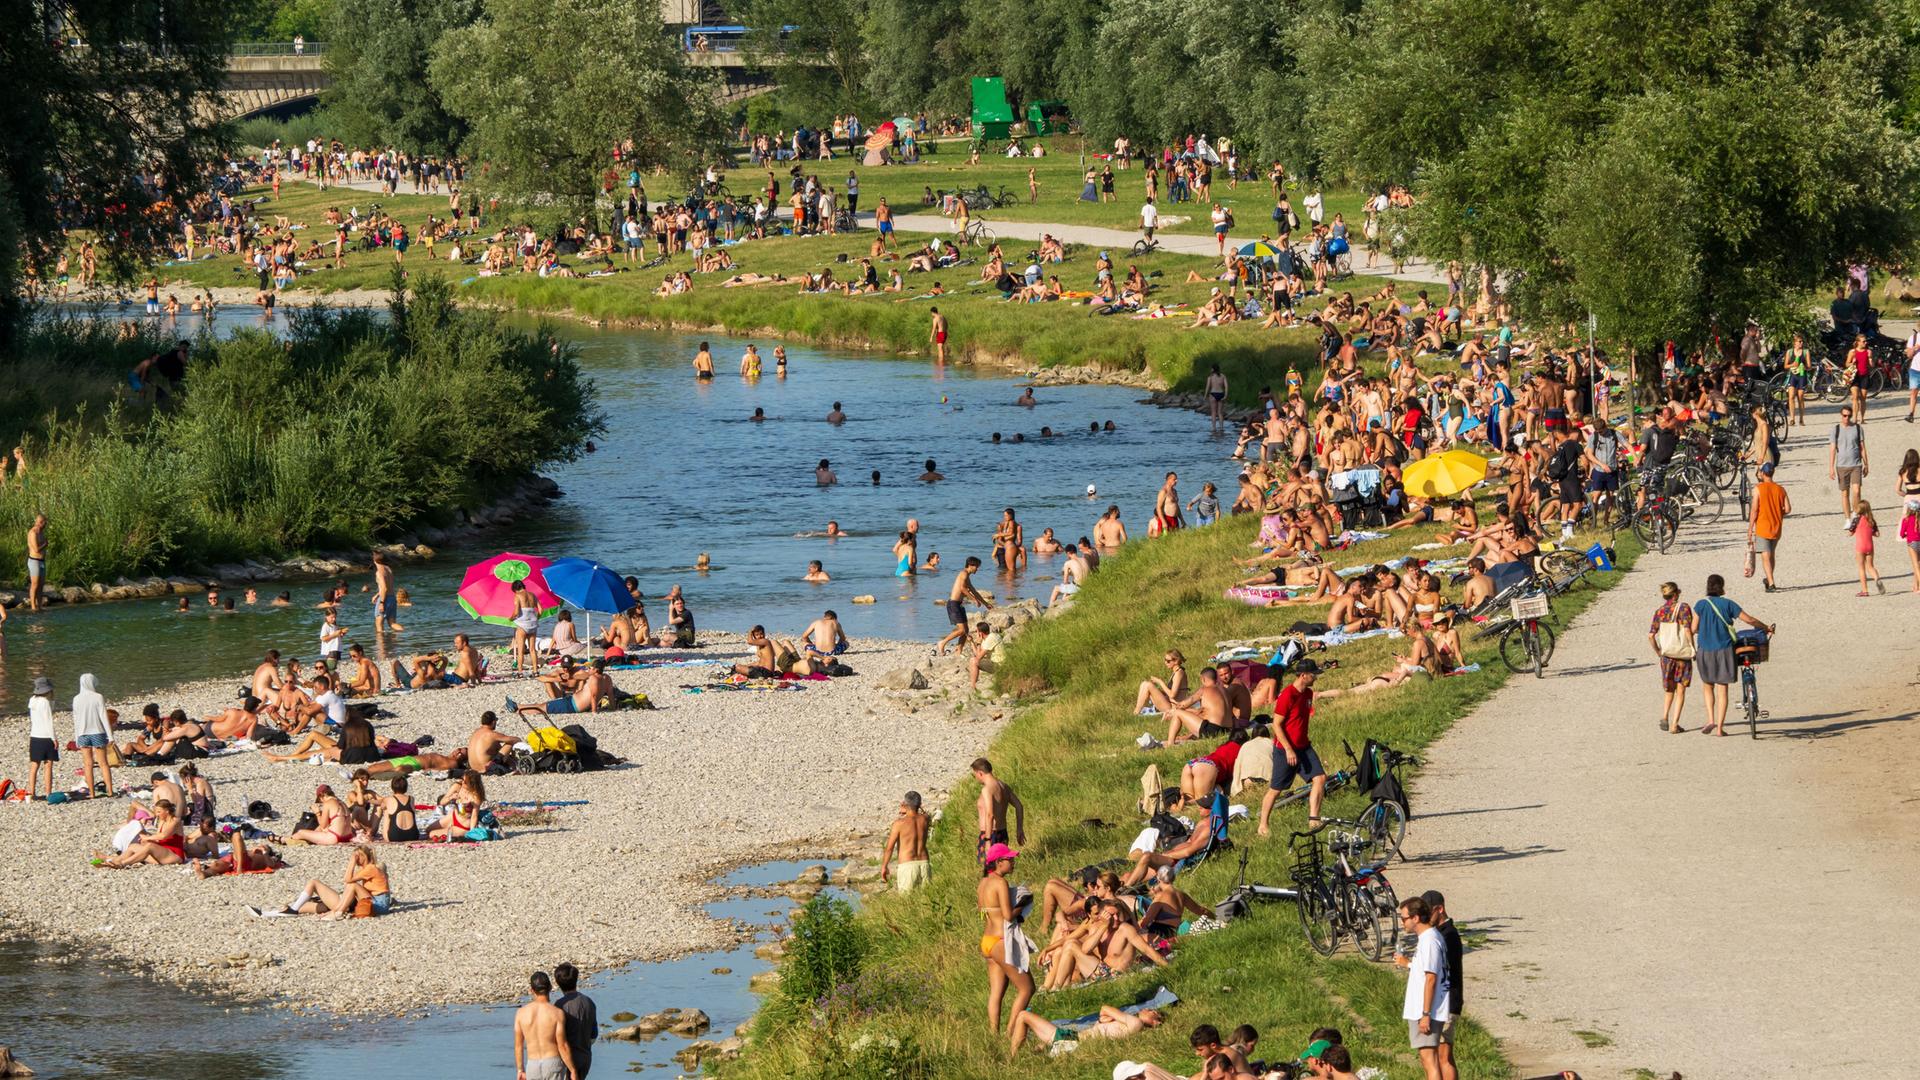 Zahlreiche Menschen suchen am Ufer und in der Isar Abkühlung von den hochsommerlichen Temperaturen.